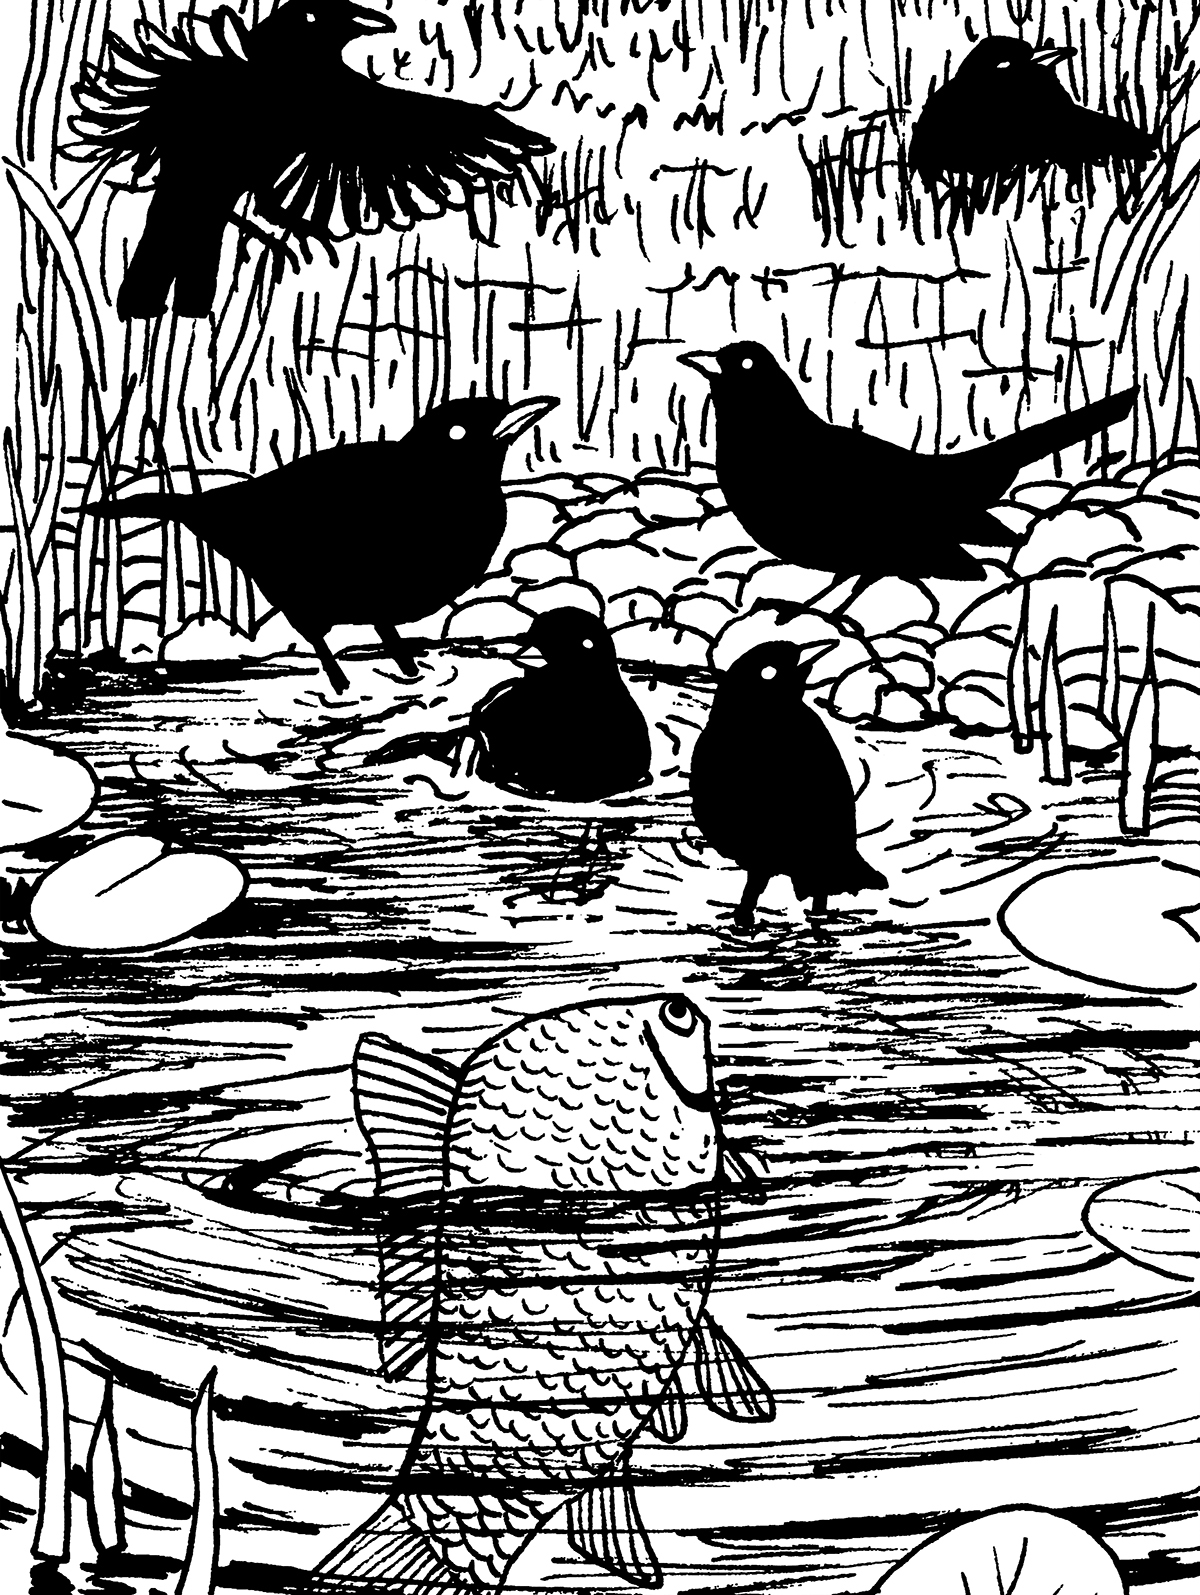 Grupa ciemnych ptaków kąpie się w wodzie. Przygląda im się wychylona z wody ryba. W wodzie pływają lilie wodne.